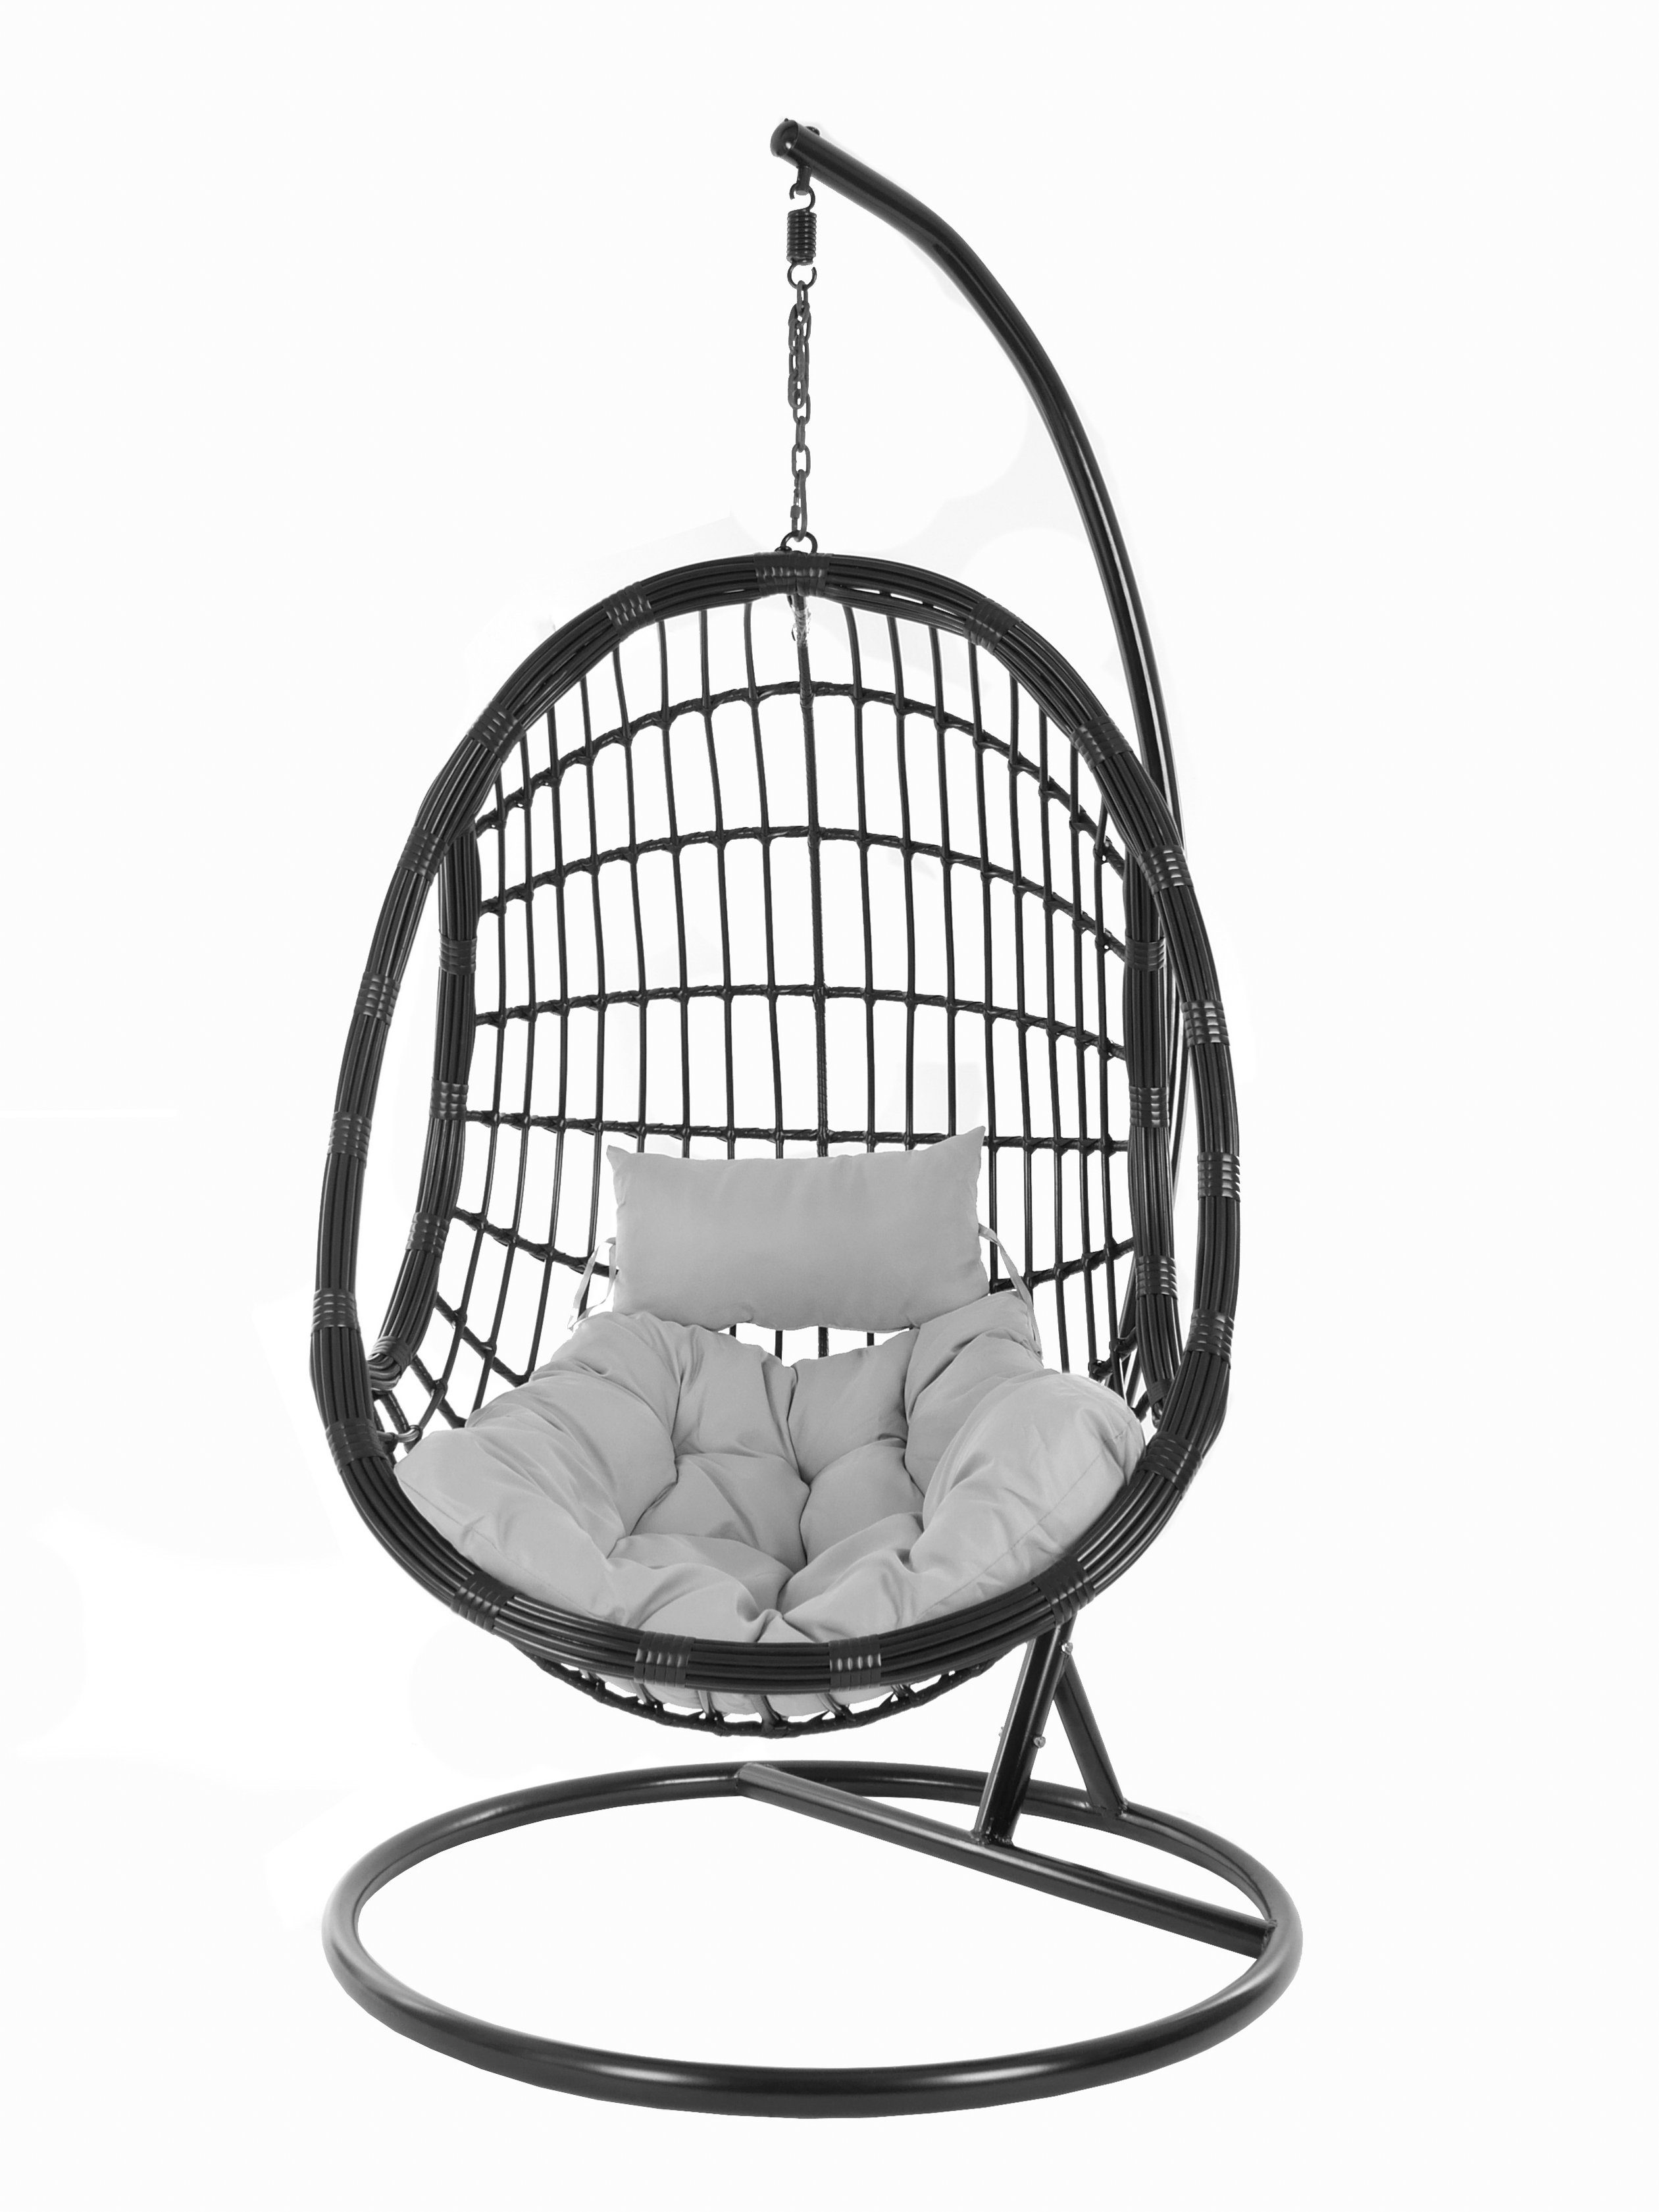 KIDEO Hängesessel und Chair, Hängesessel Design Kissen, Loungemöbel, grau Gestell mit (8008 Swing edles cloud) PALMANOVA Schwebesessel, black, schwarz